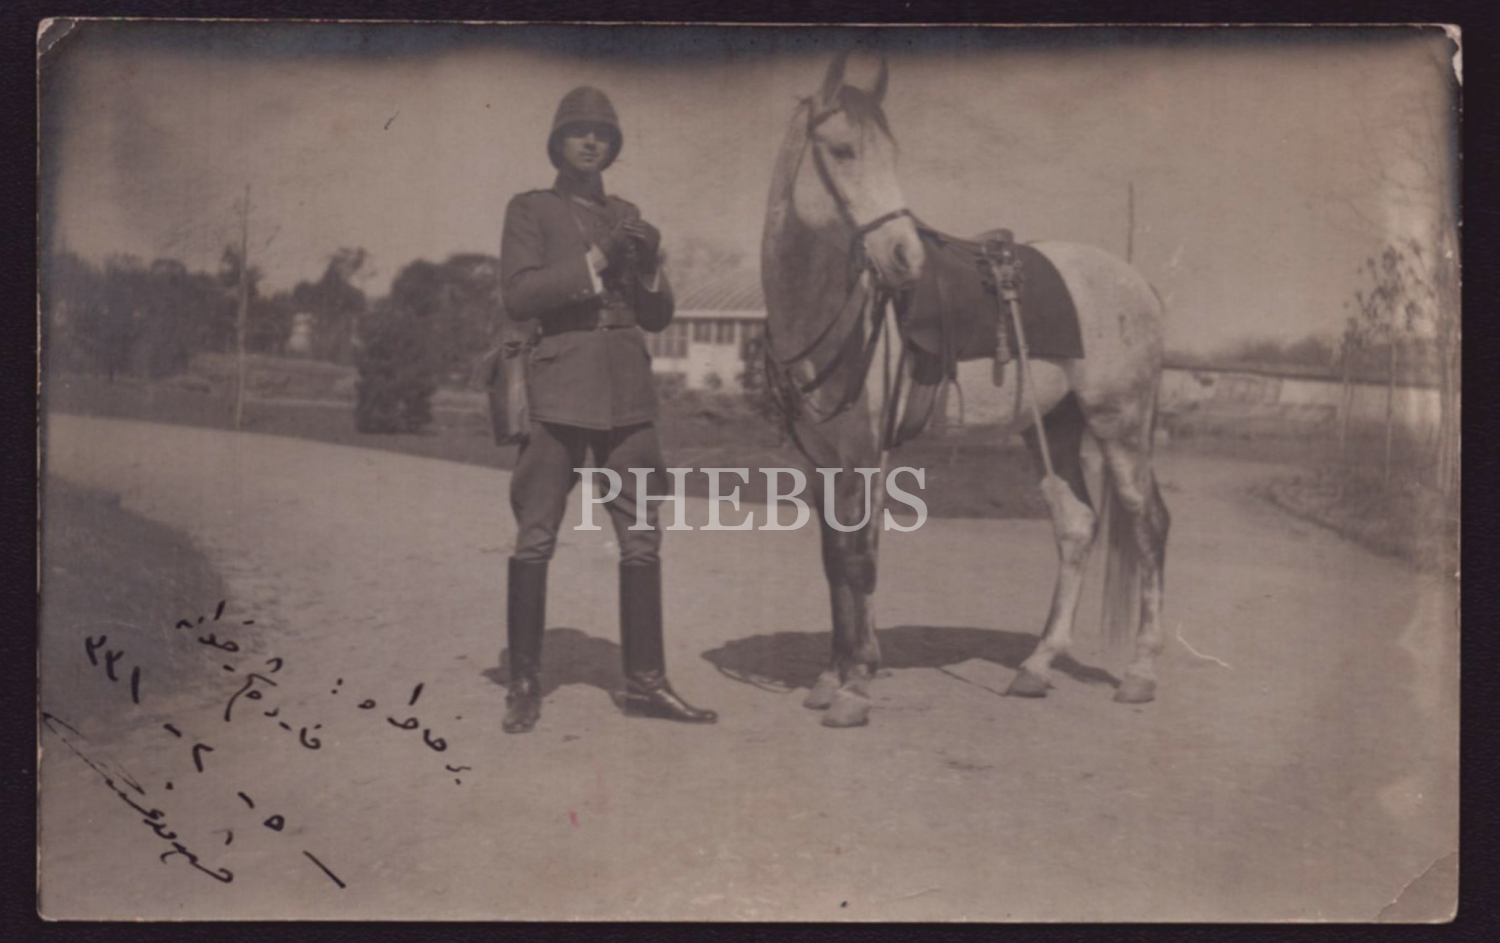 Çanakkale Harbi´nde vazifeli bir mülazım-ı saninin (teğmen) atının başında çektirdiği ithaflı ve imzalı, 1331 (1914) tarihli hatıra fotoğrafı, 14x9 cm...